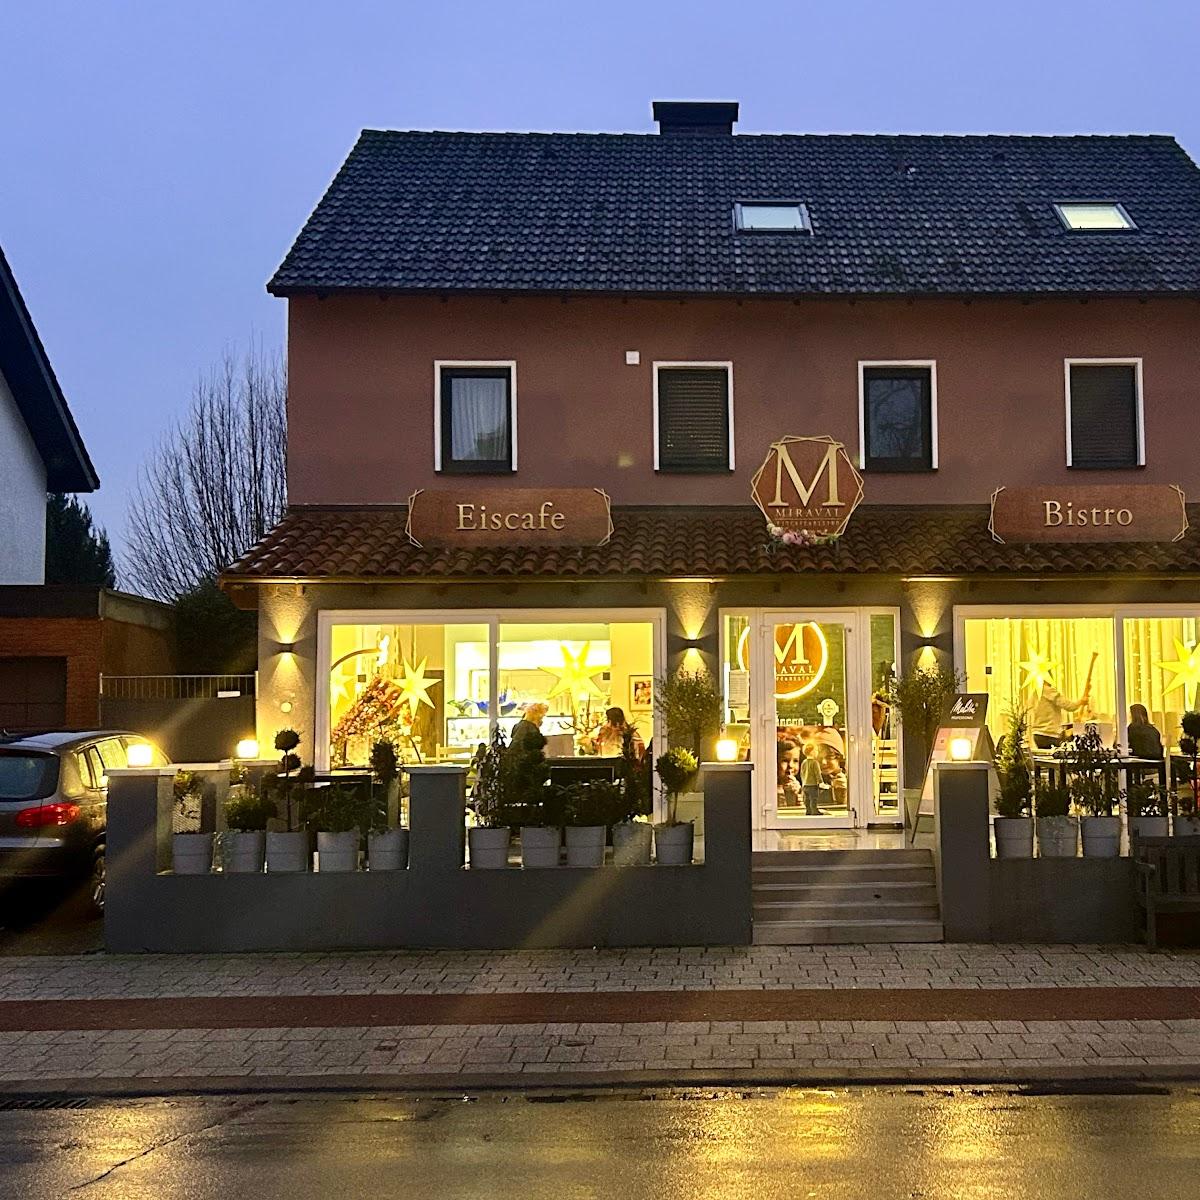 Restaurant "Miraval Eiscafé & Bistro" in Augustdorf